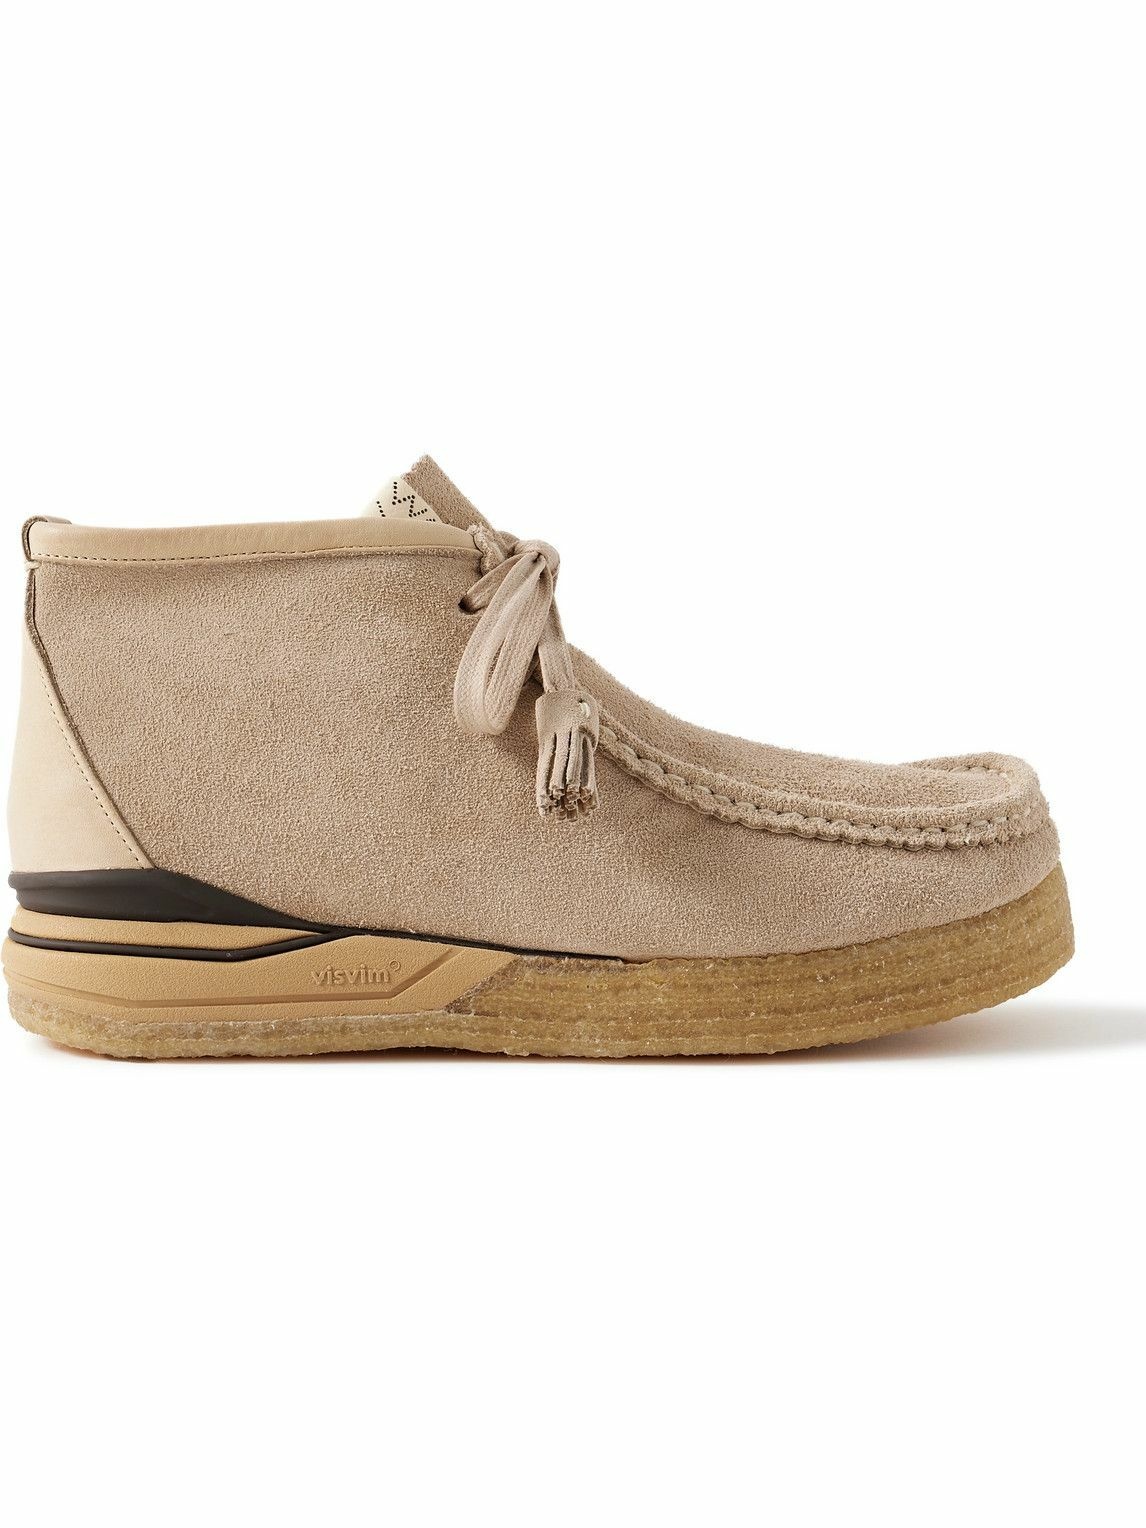 Visvim - Beuys Leather-Trimmed Suede Desert Boots - Neutrals Visvim